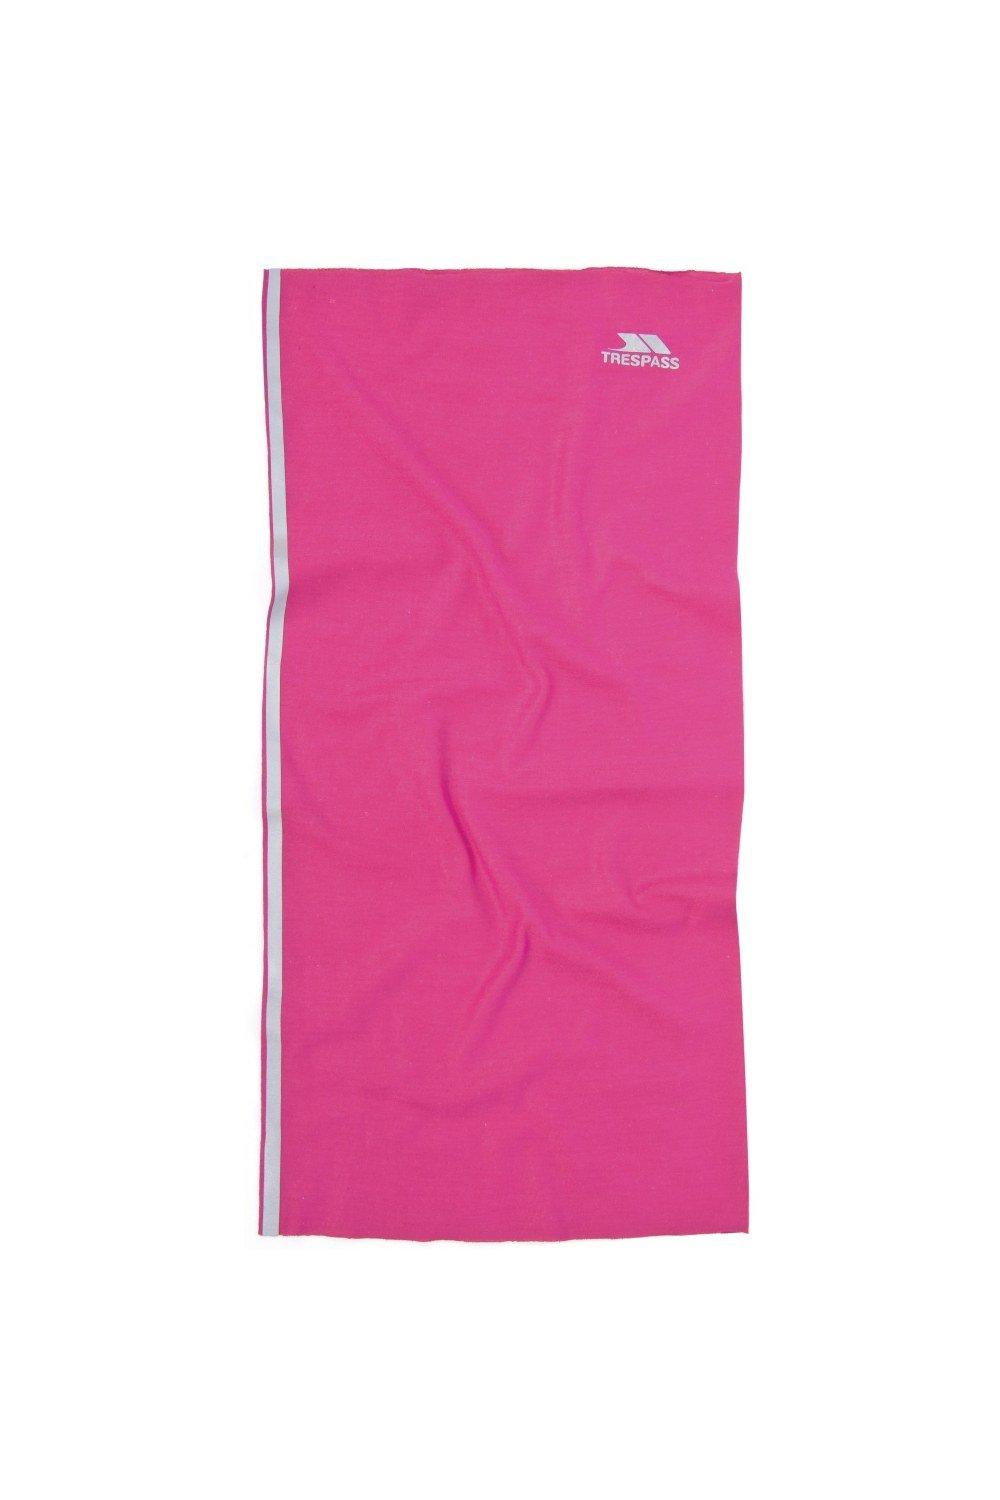 Многофункциональный шейный шарф Tattler Trespass, розовый многофункциональный шейный шарф tattler trespass розовый